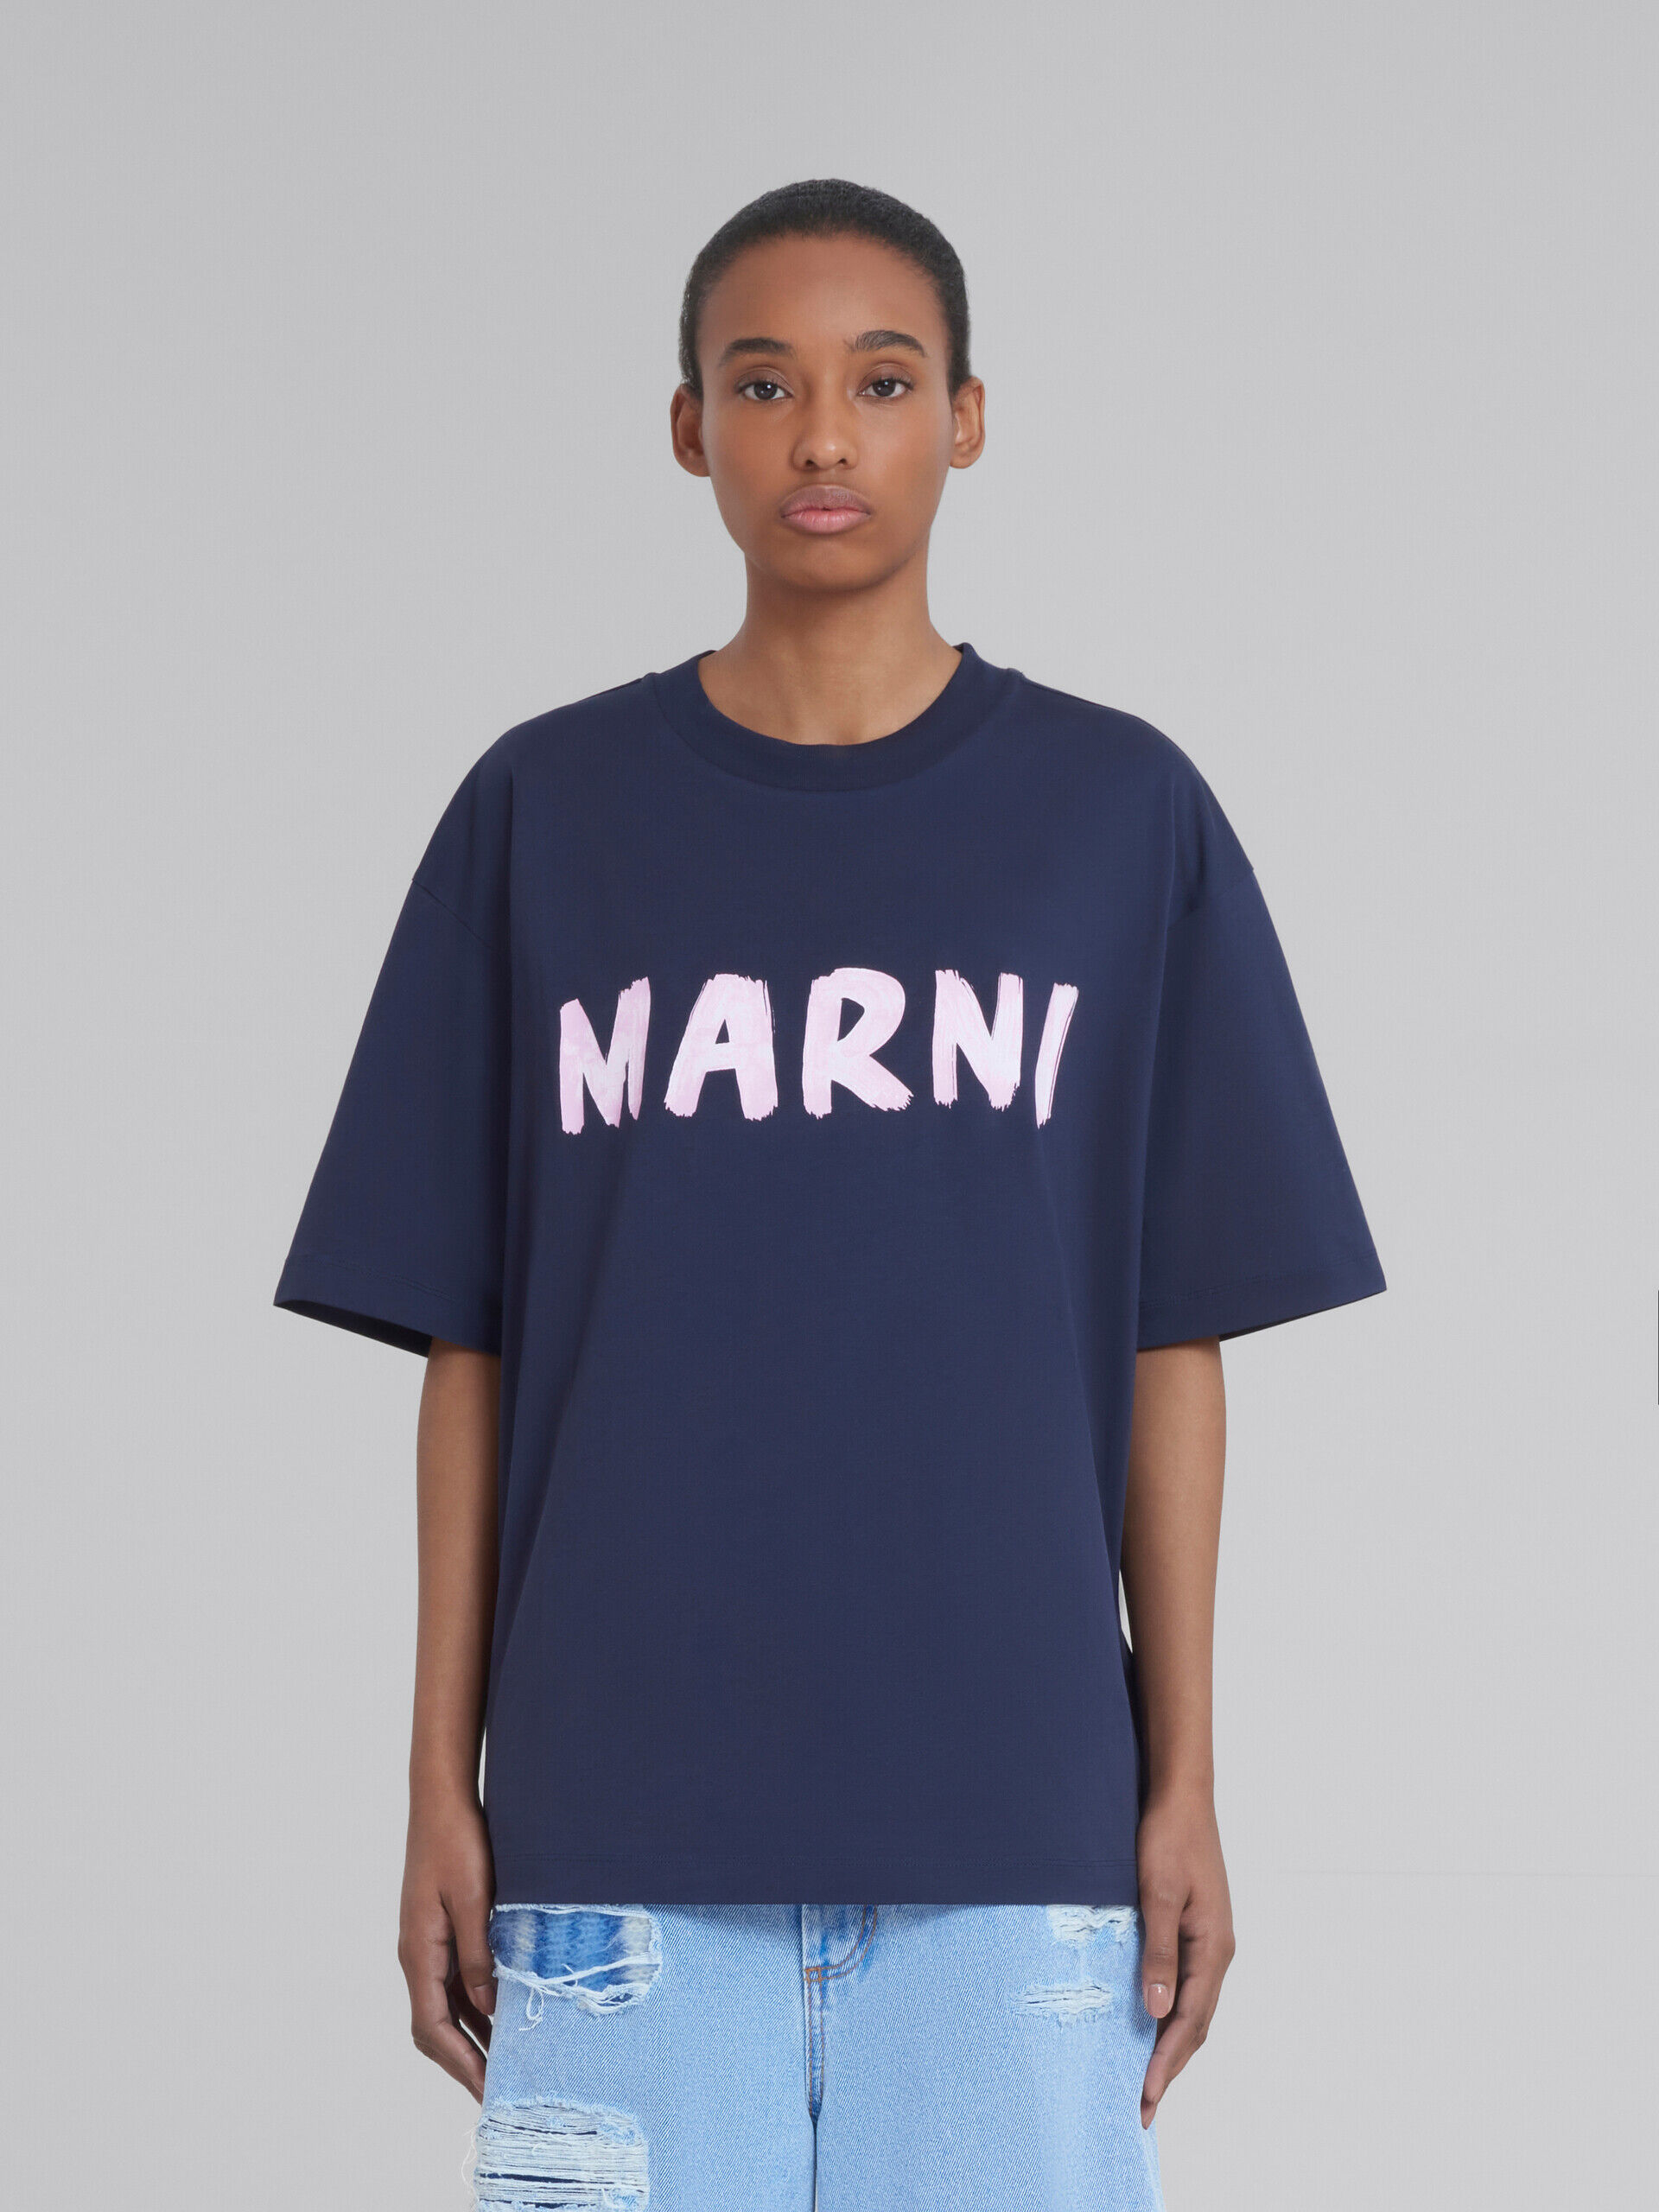 marni の人気ロゴTシャツです！